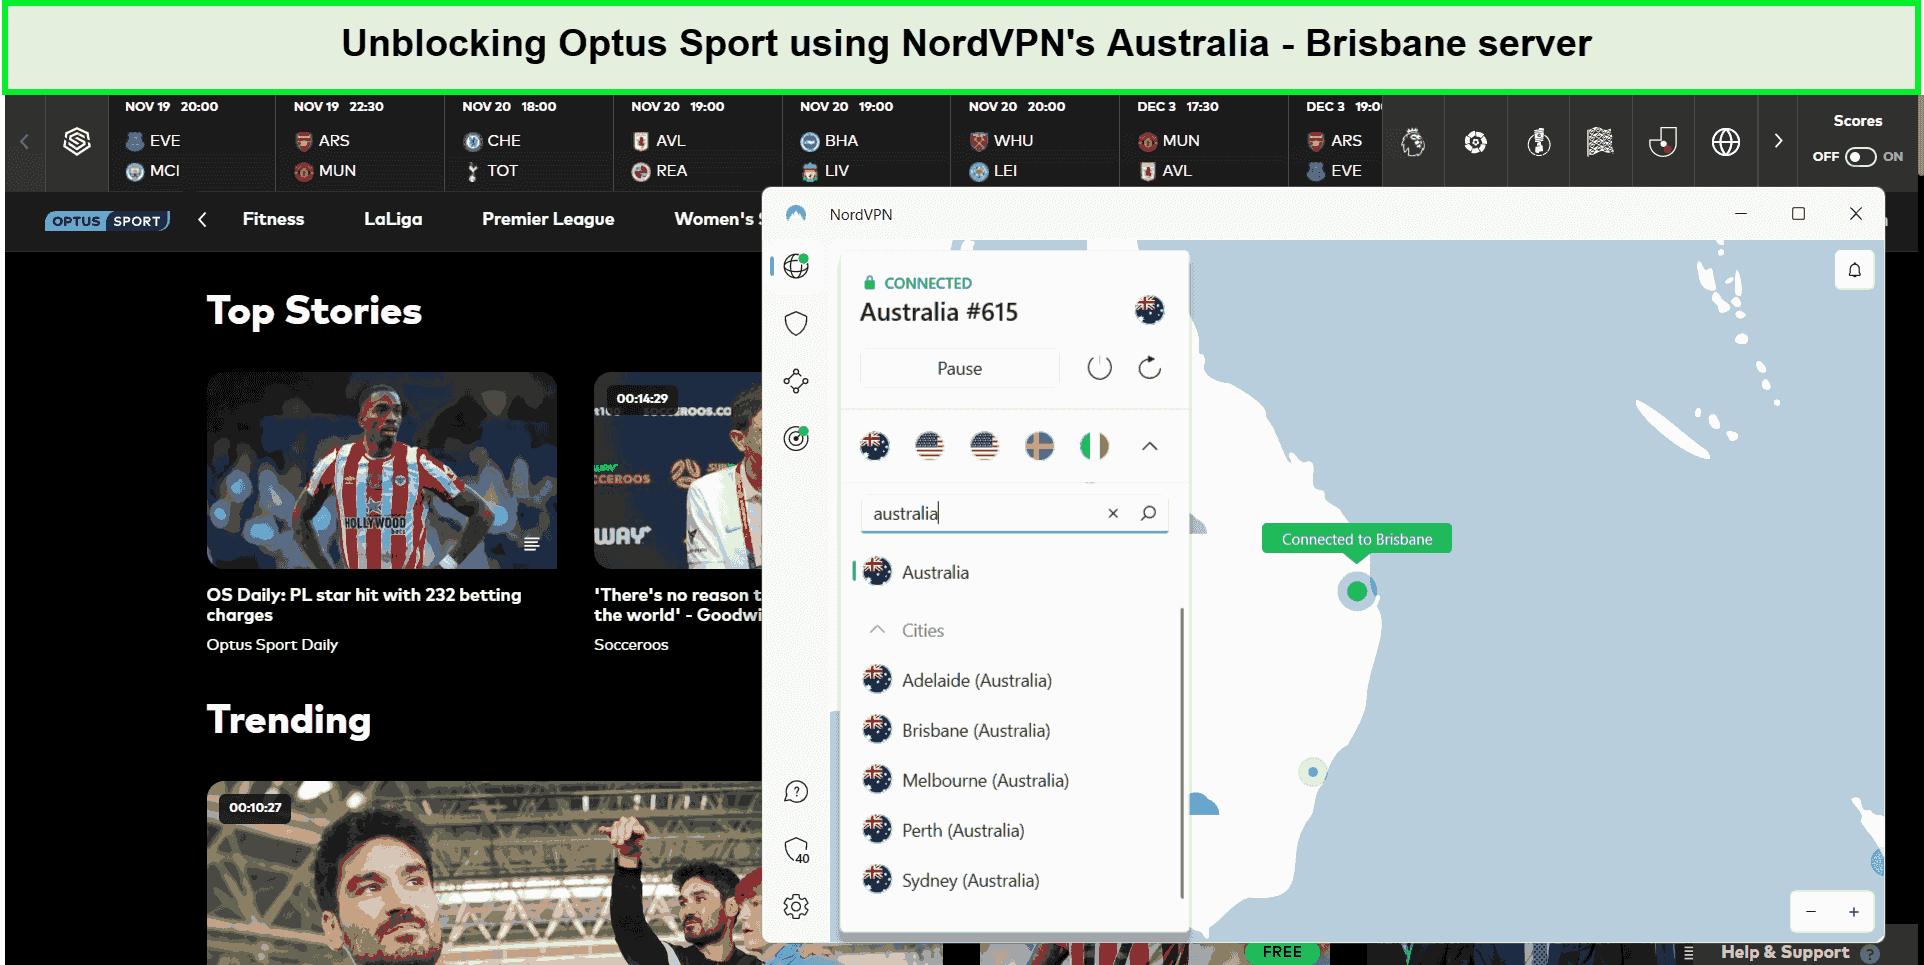 nordvpn-unblocked-optus-sport-outside-australia